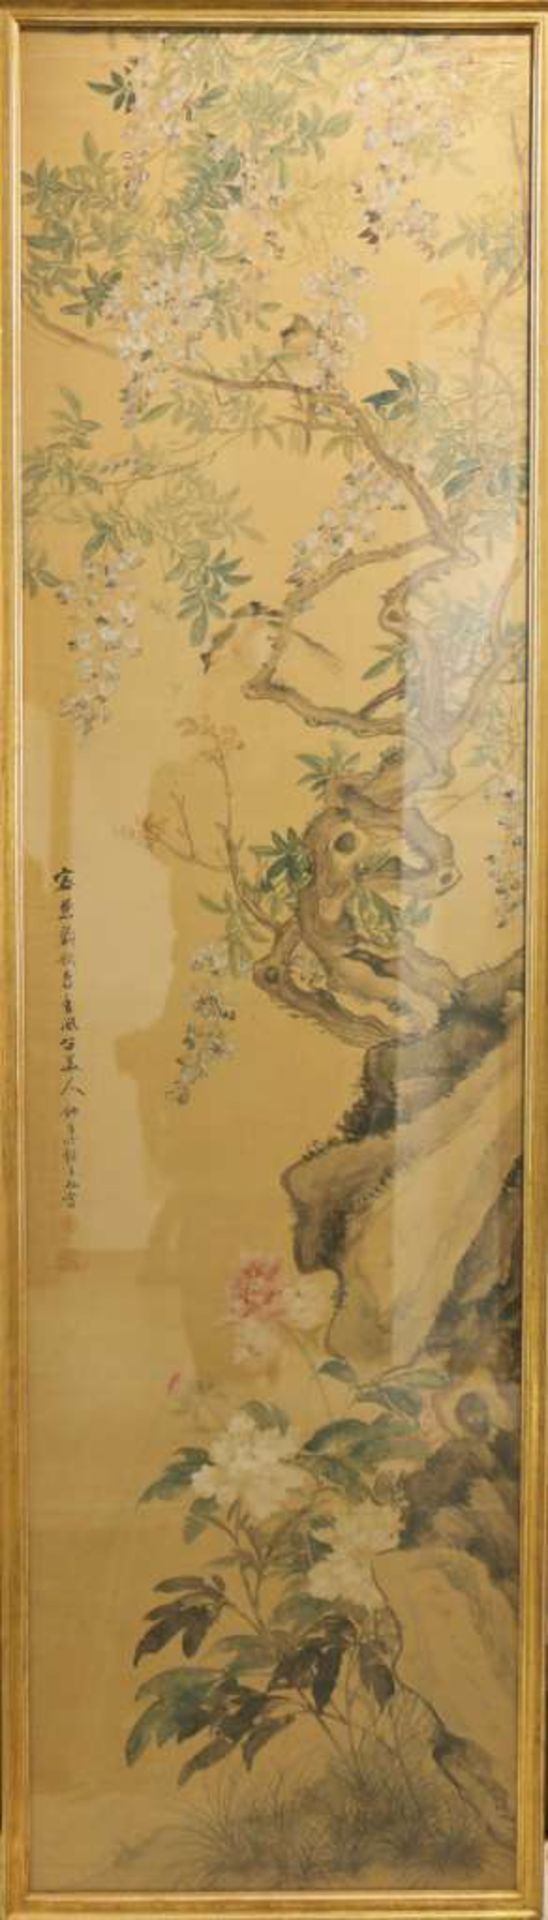 Kakemono, Tuschezeichnung, wohl Edo Zeit, in der Art des Tachihara KYOSHO (1786-1840), dargestellt - Bild 2 aus 5